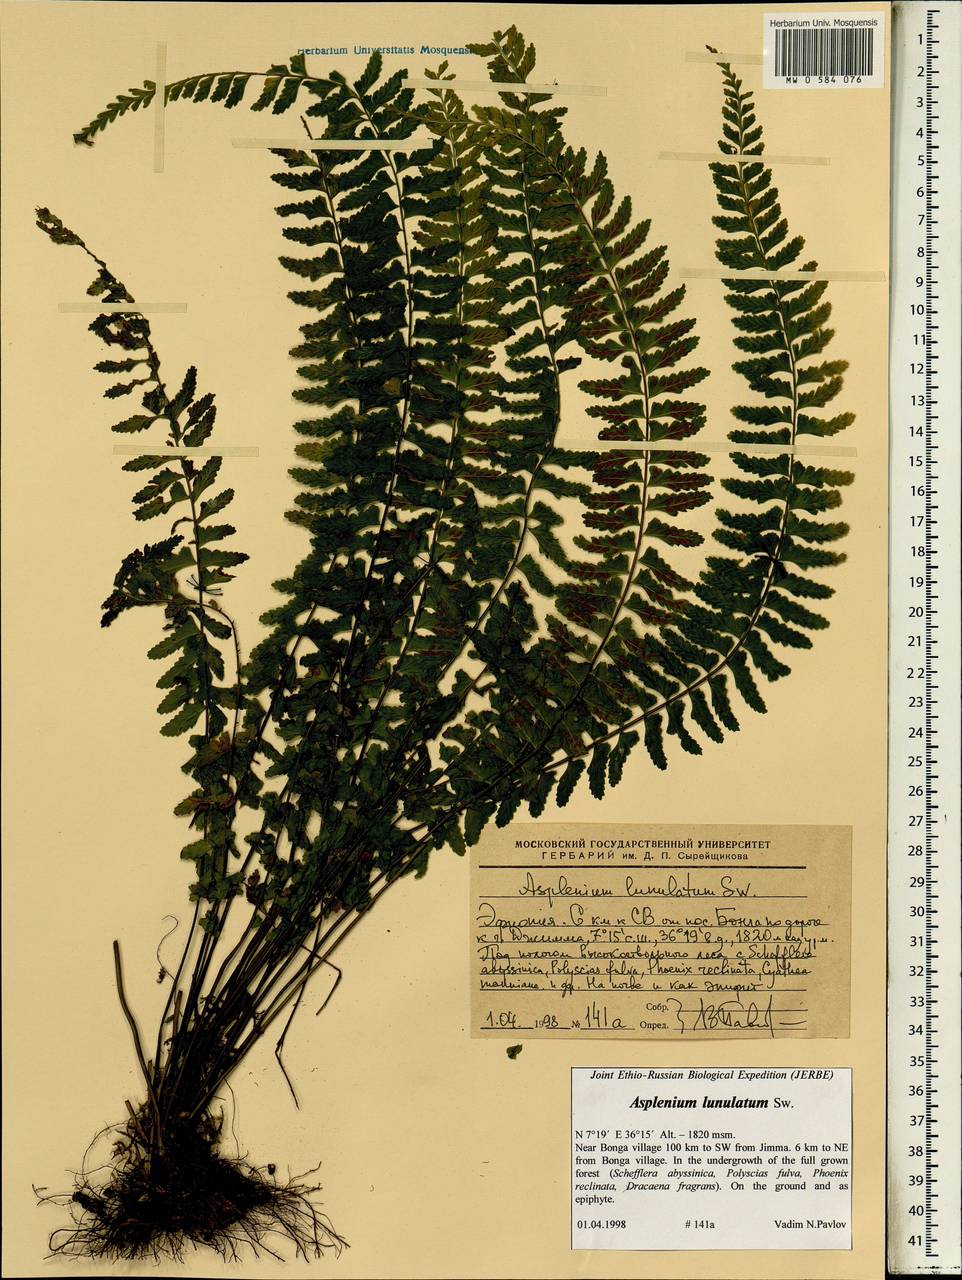 Asplenium lunulatum Sw., Africa (AFR) (Ethiopia)